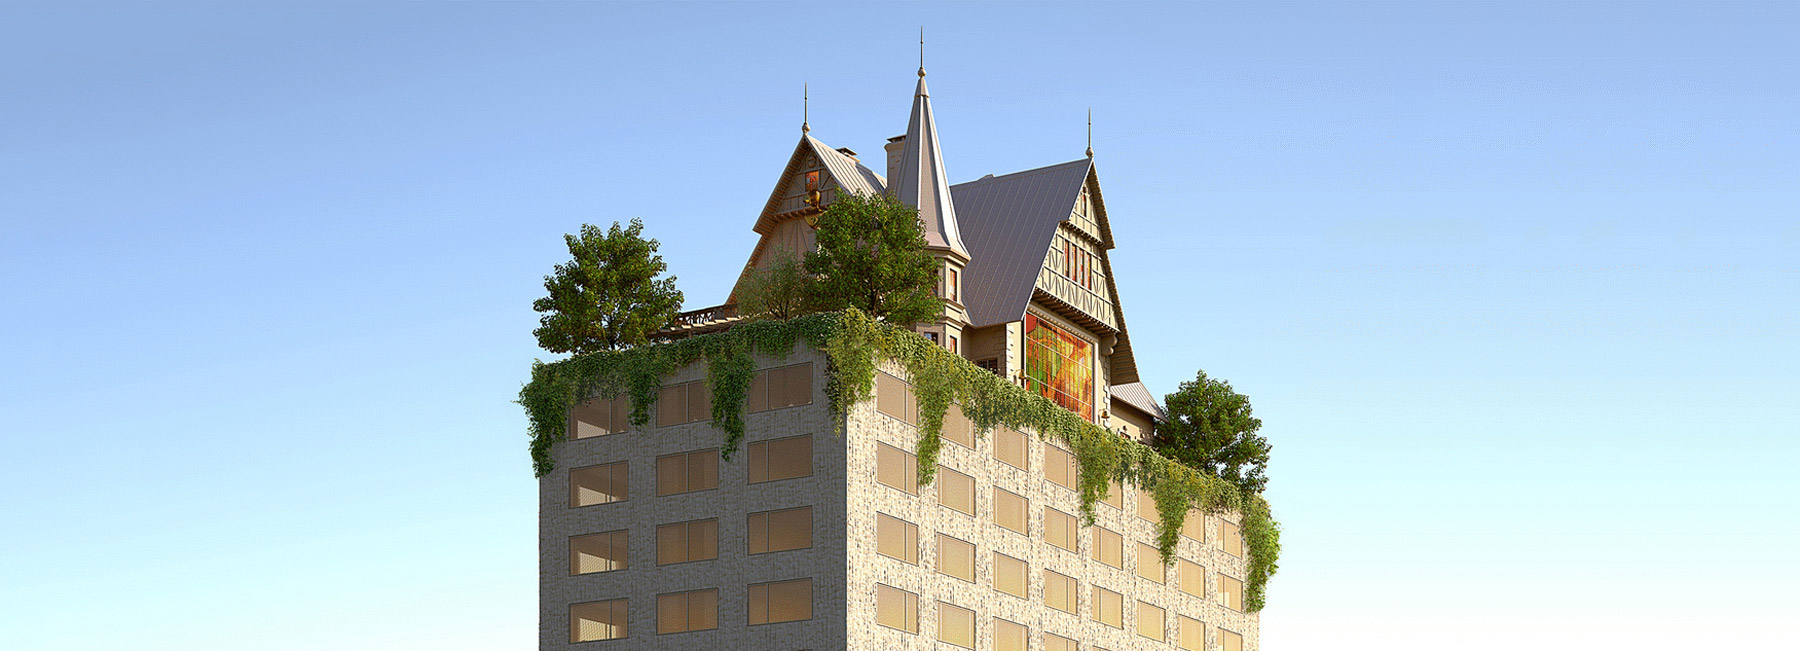 Î‘Ï€Î¿Ï„Î­Î»ÎµÏƒÎ¼Î± ÎµÎ¹ÎºÏŒÎ½Î±Ï‚ Î³Î¹Î± Philippe Starck designs surrealistic hotel for Hilton